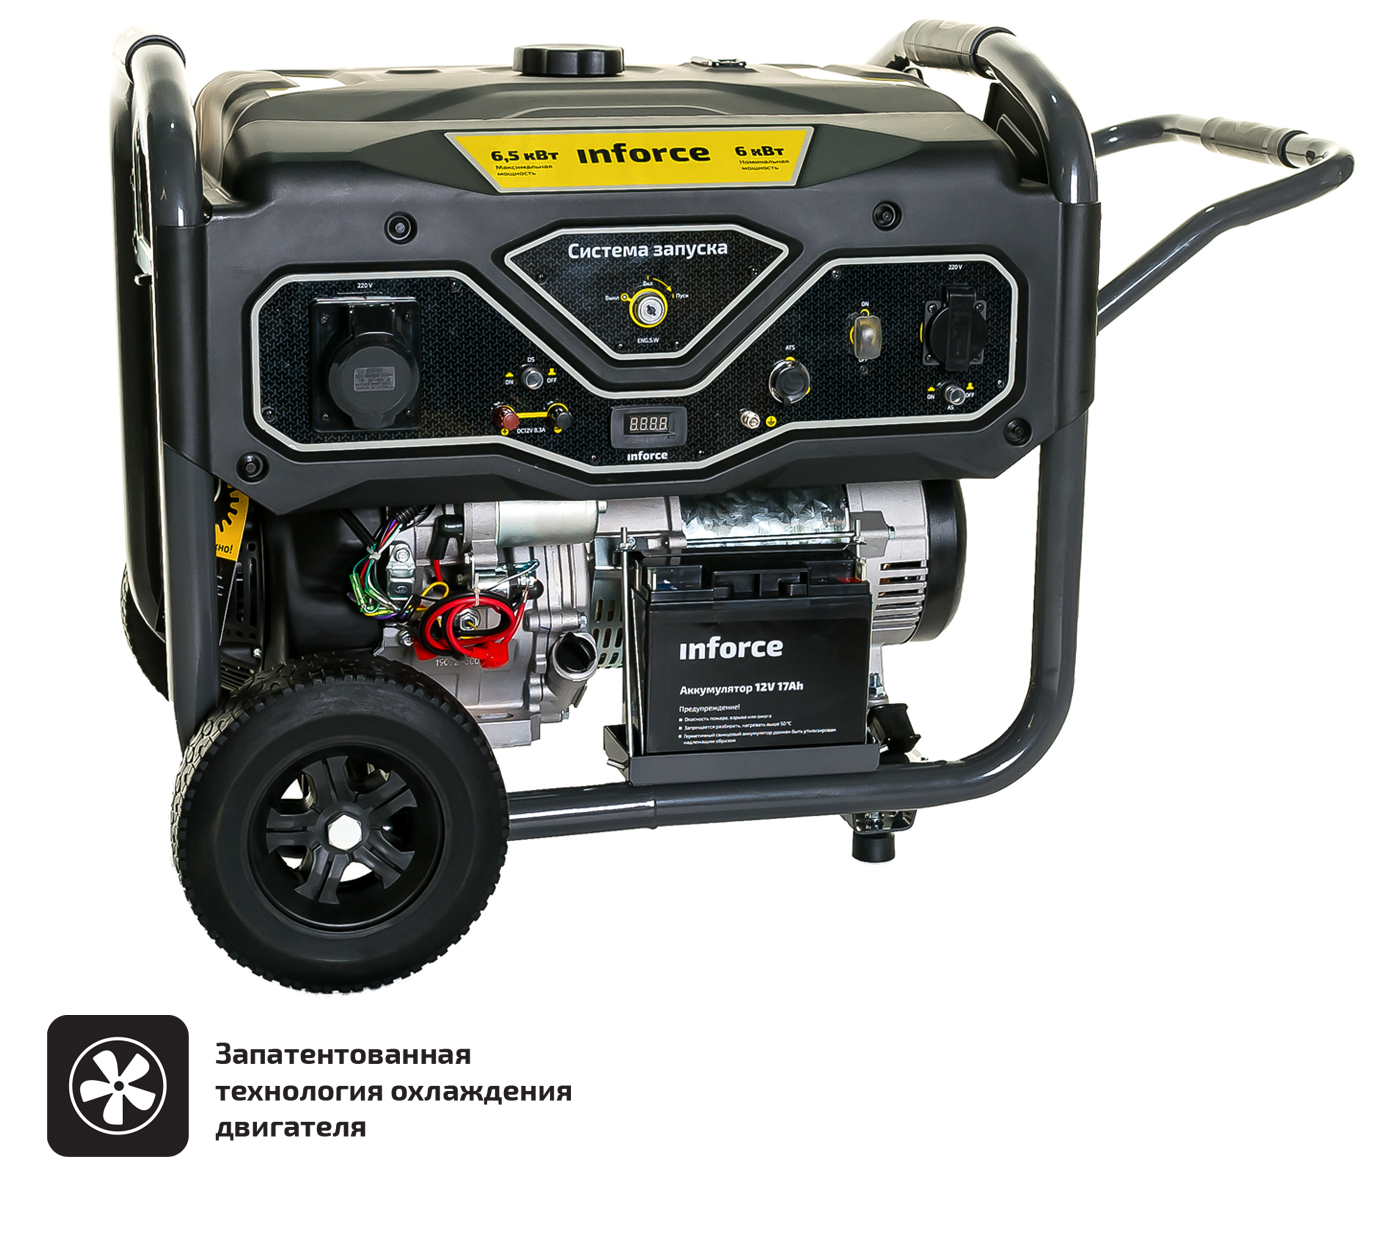 Бензиновый генератор с возможностью подключения блока автоматики Inforce GL 6500 04-03-15 бензиновый генератор carver ppg 6500 builder 01 020 00019